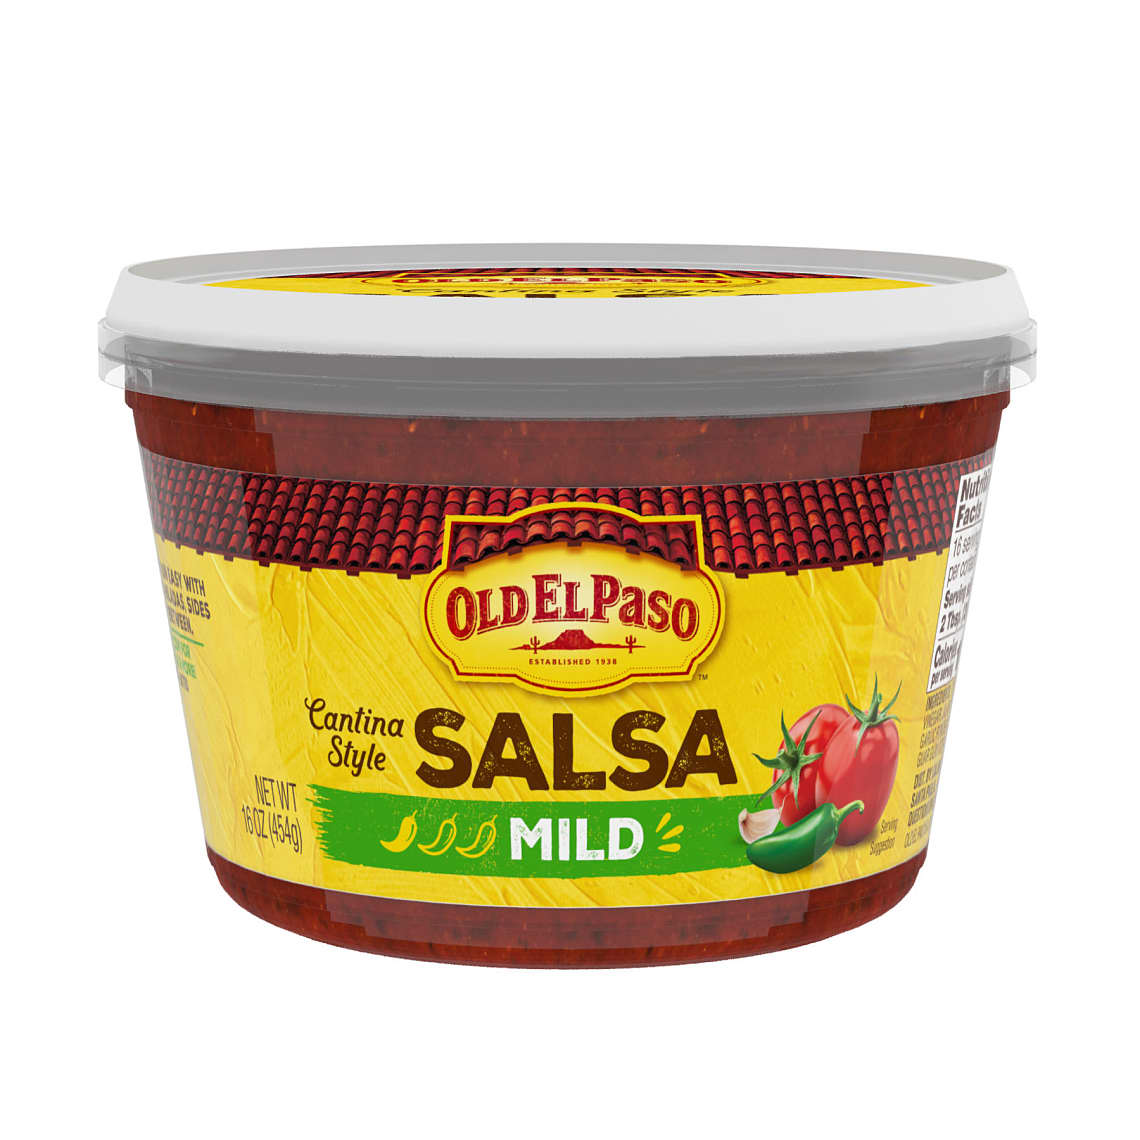 Old El Paso Mild Salsa